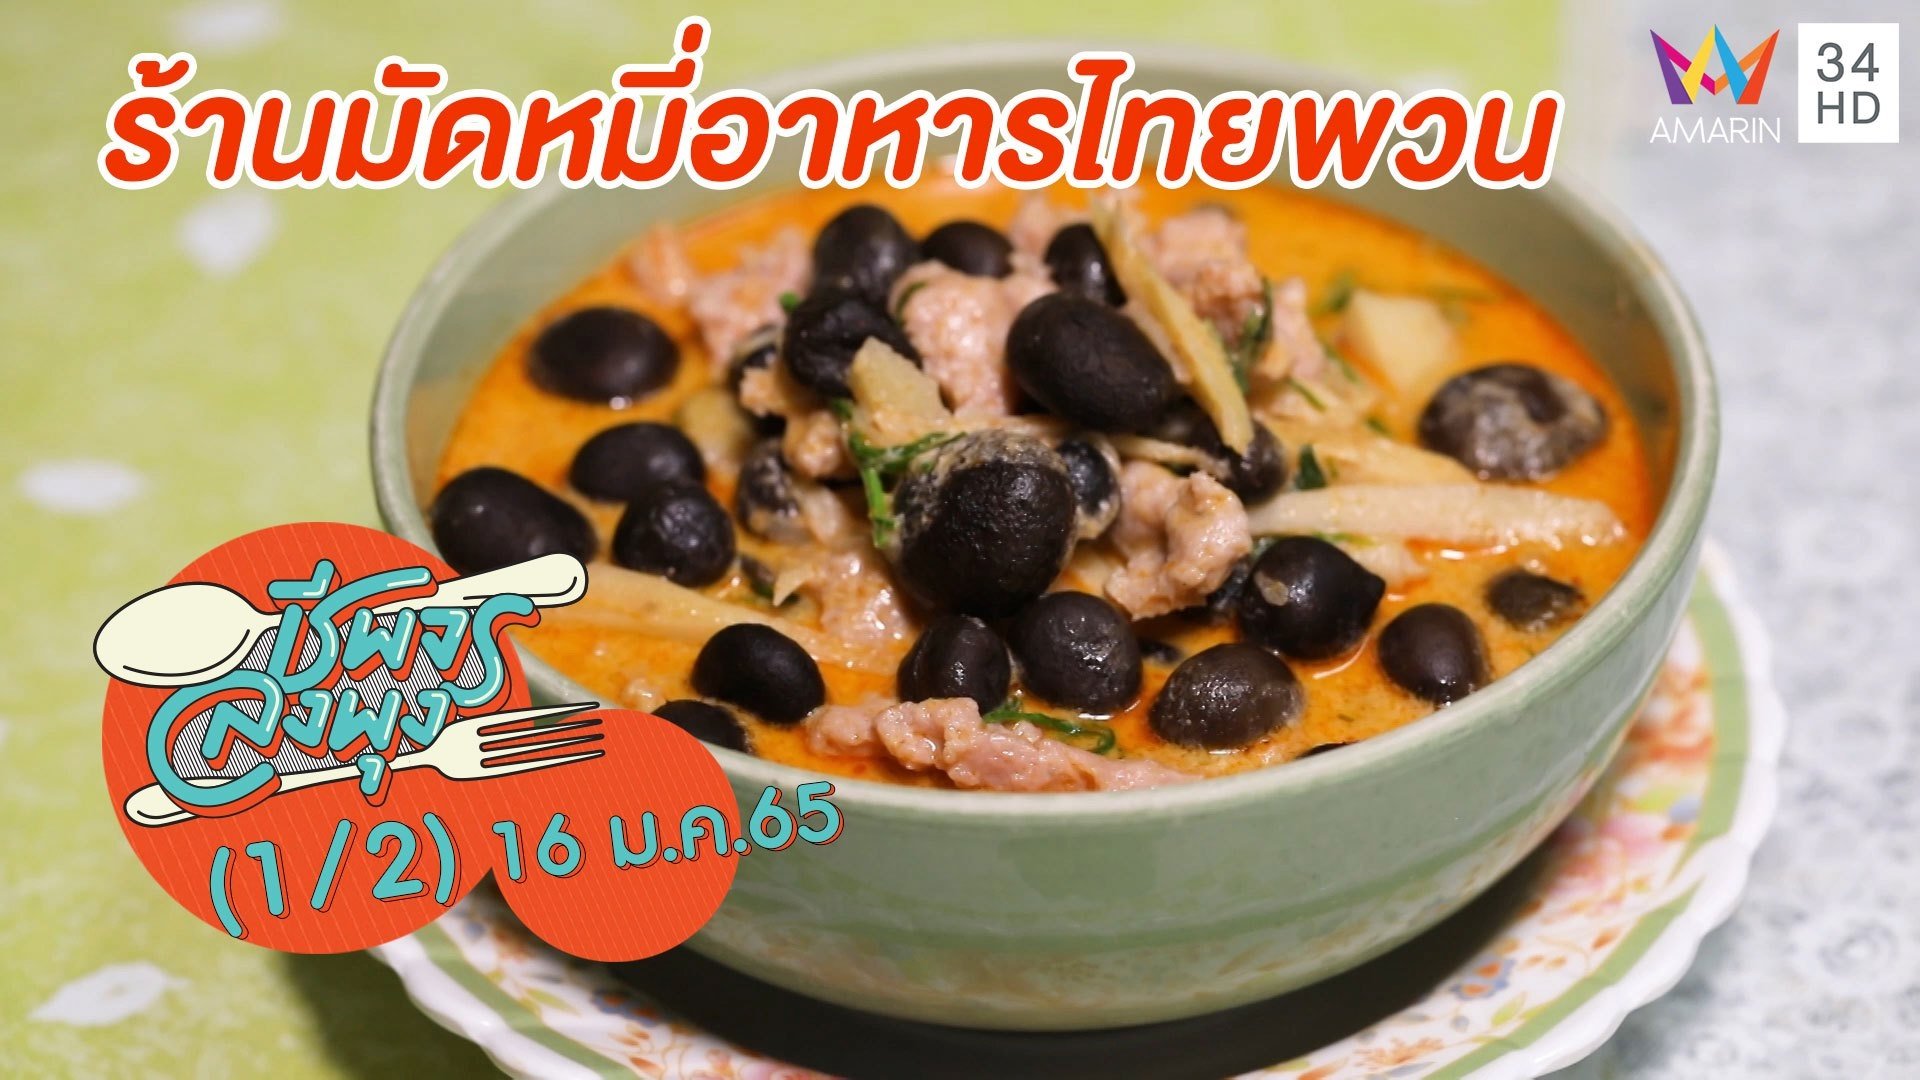 ลิ้มรสอาหารไทยพวนพื้นเมือง @ ร้านมัดหมี่อาหารไทยพวน | ชีพจรลงพุง | 16 ม.ค. 65 (1/2) | AMARIN TVHD34